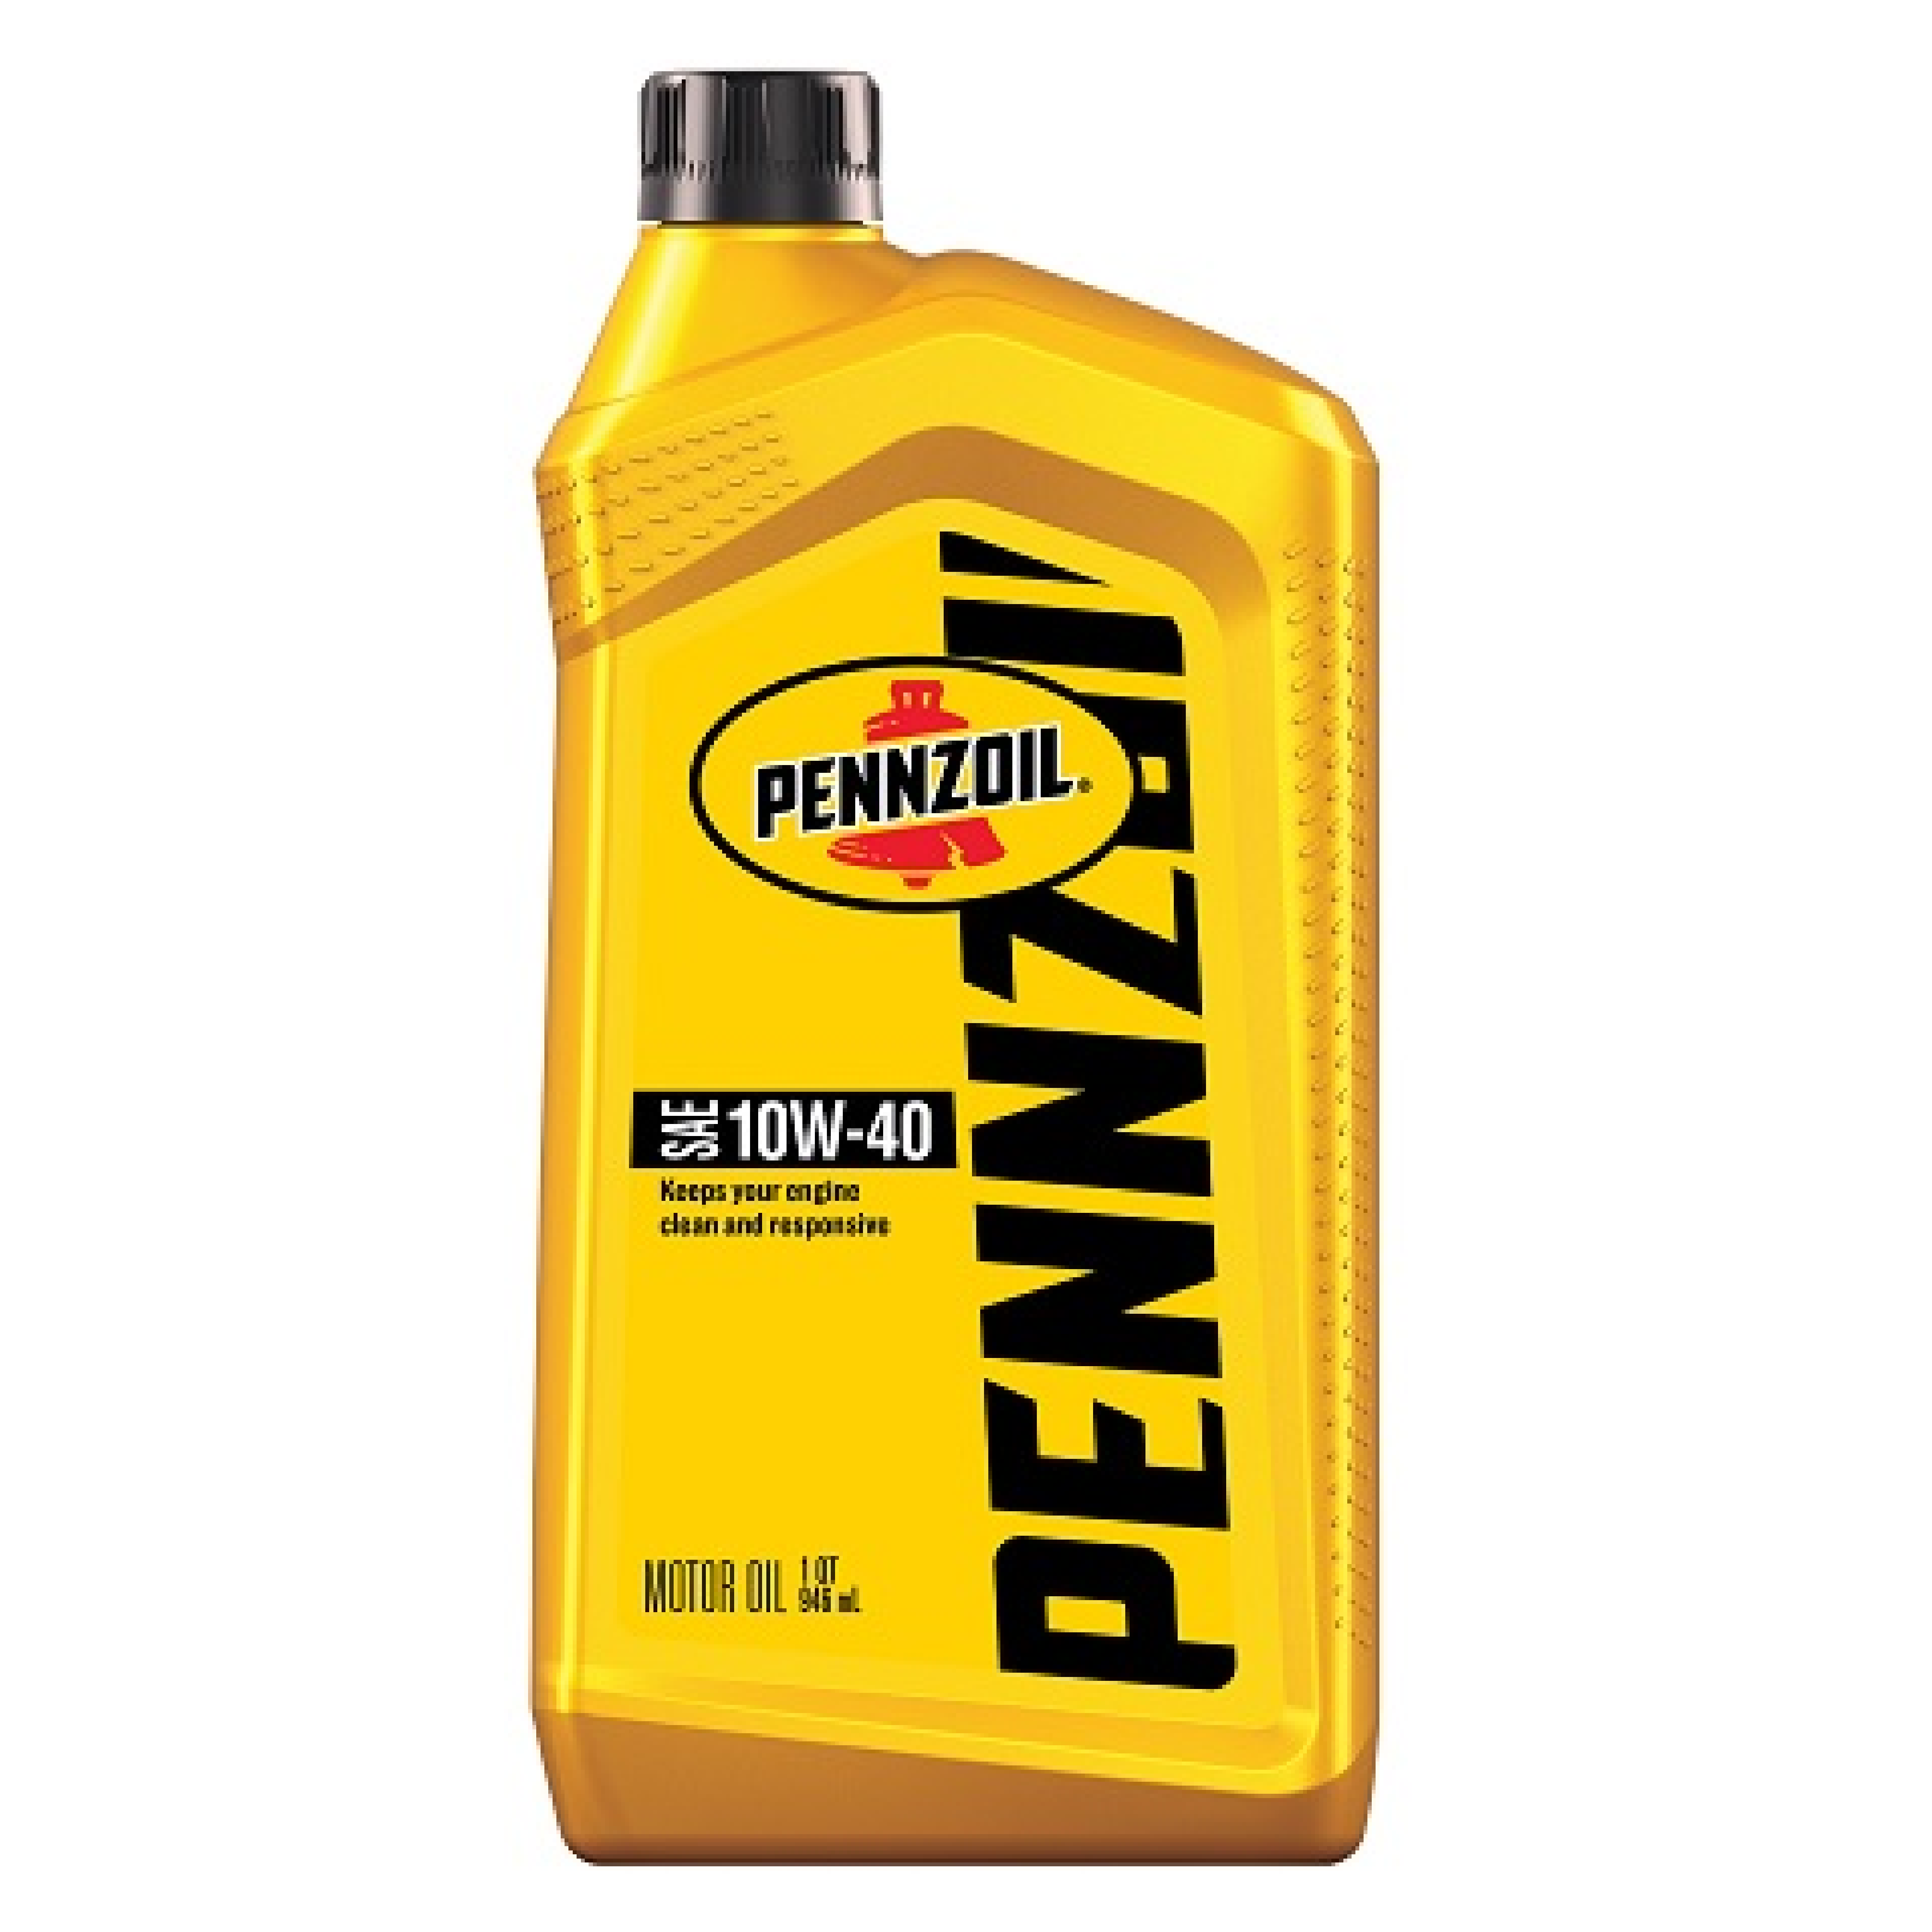 Pennzoil SAE 10W-40 Motor Oil 1QT